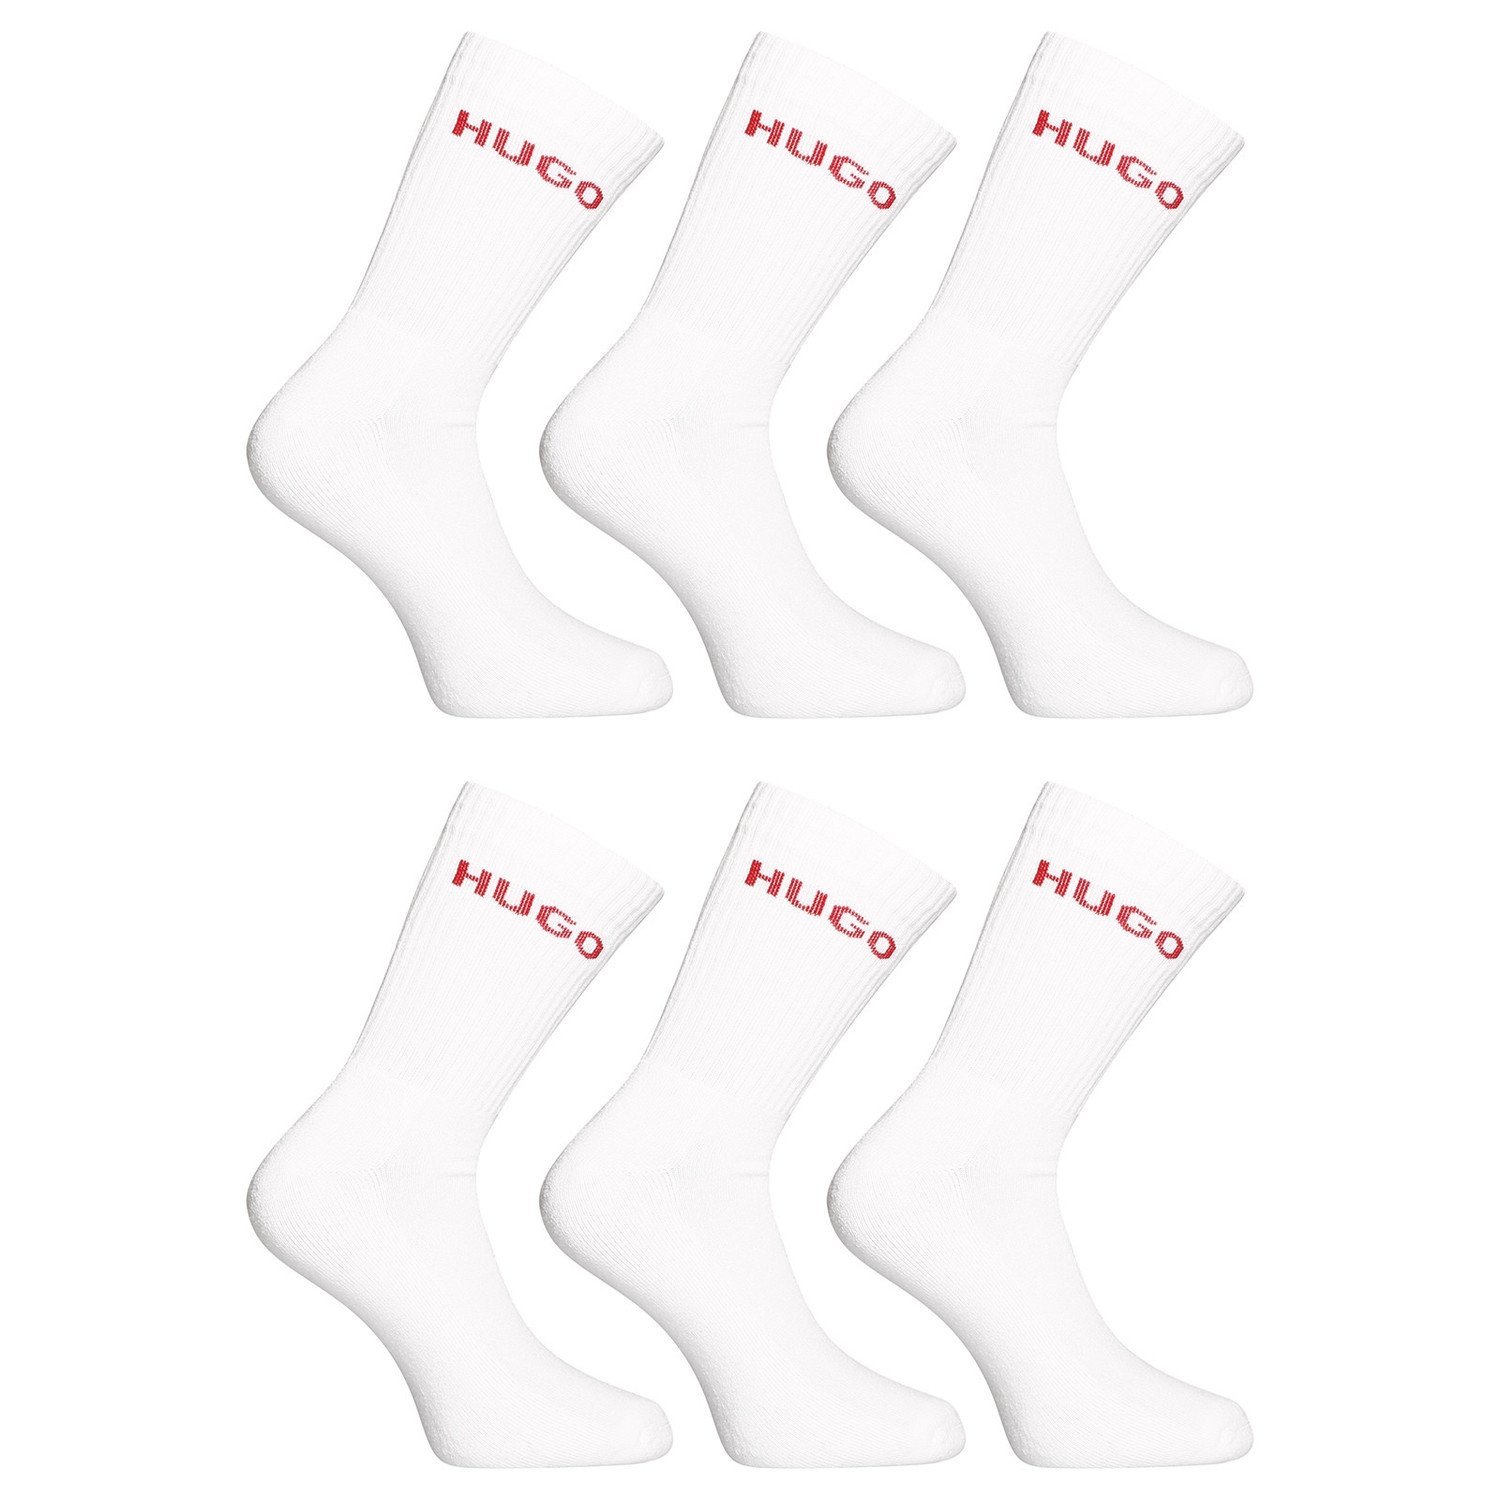 6PACK ponožky Hugo Boss vysoké bílé (50510187 100) L